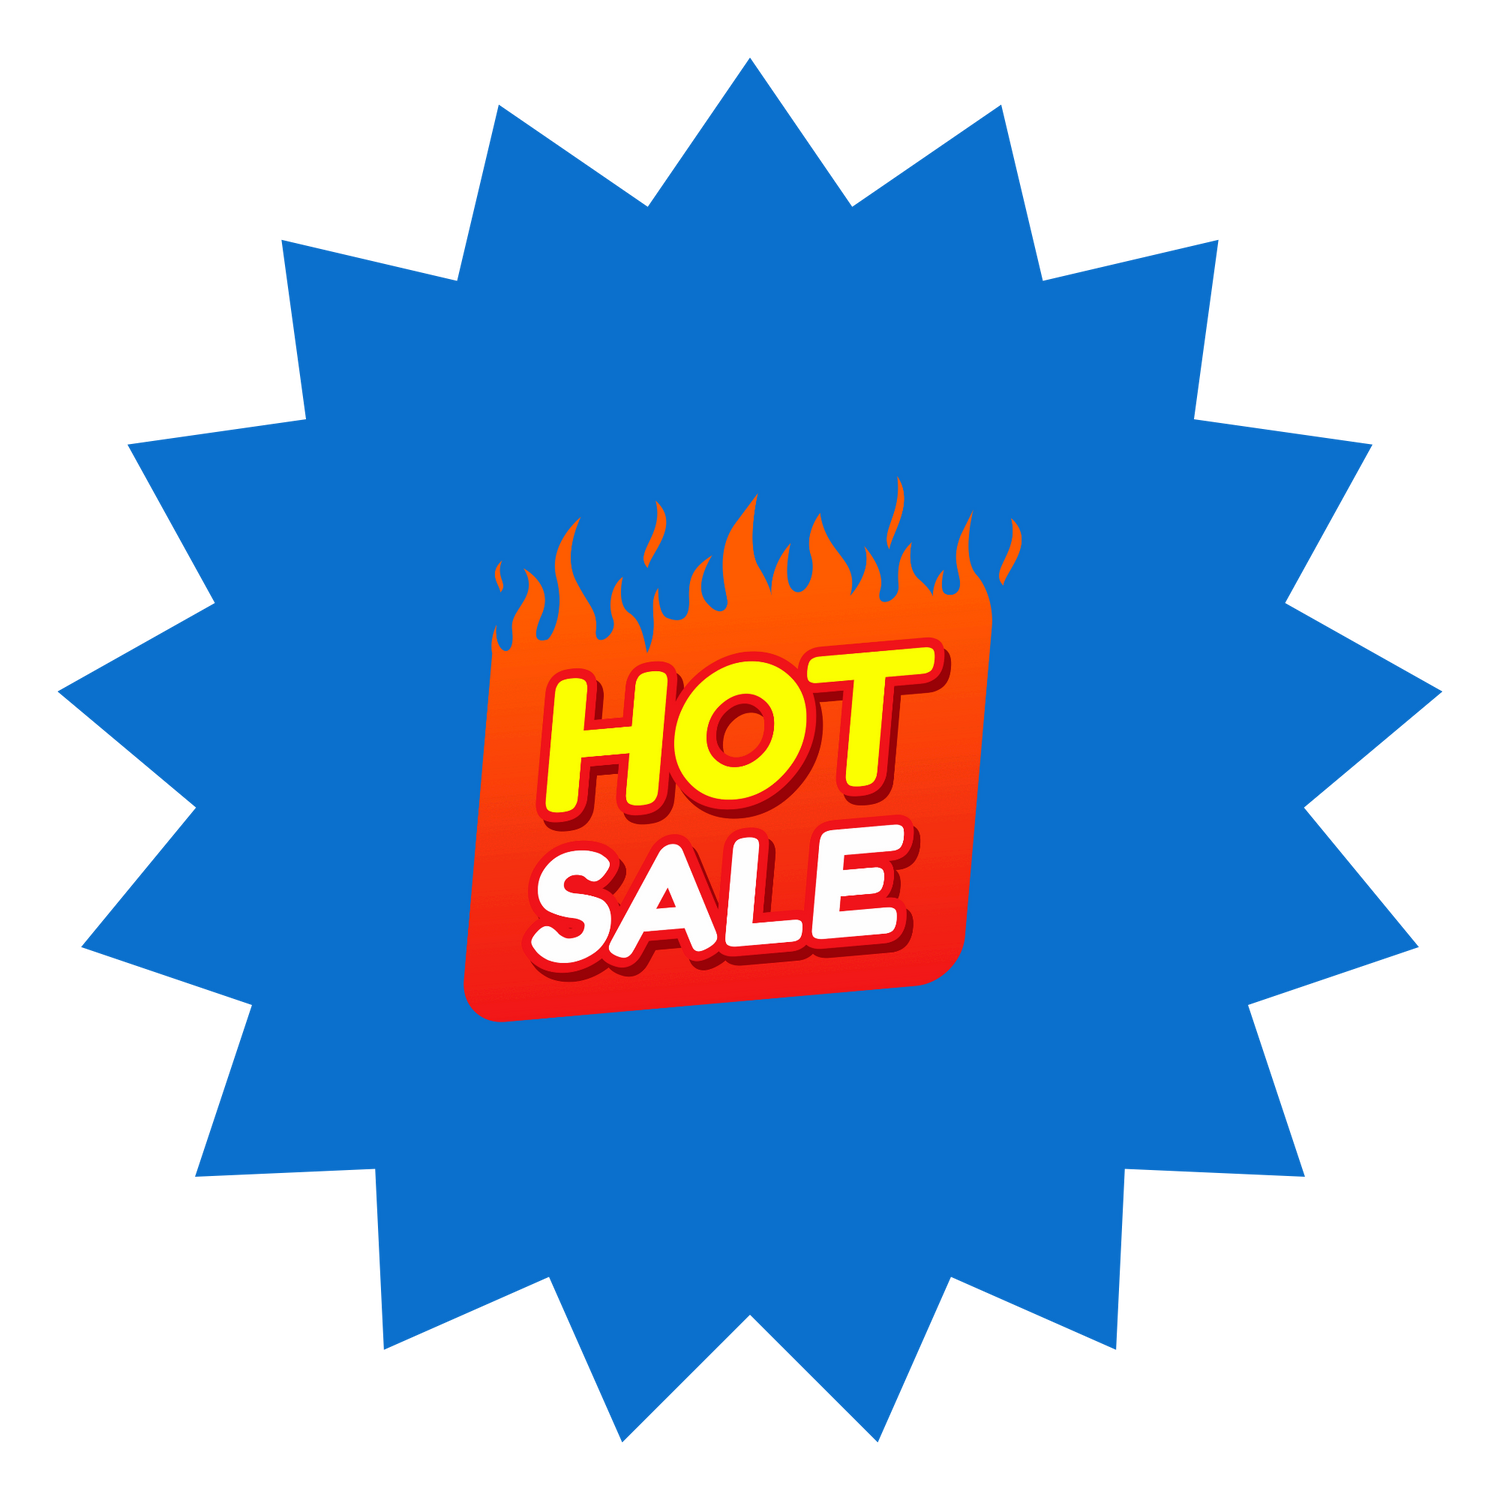 Hot Sales